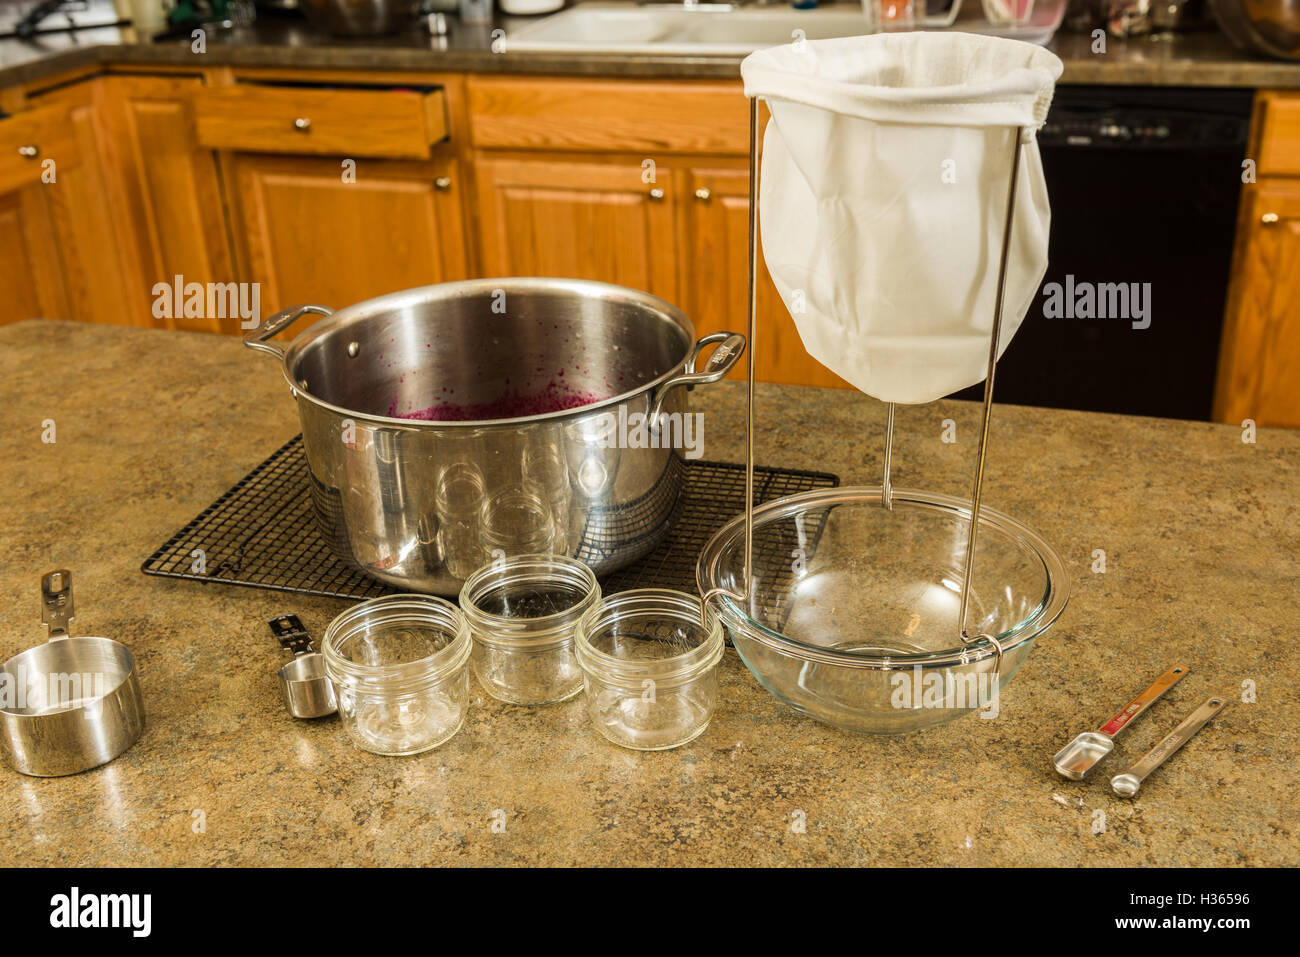 Los elementos necesarios para hacer jalea o mermelada casera en casa. Tamiz, recipiente, vasos de medición, y hervidor de agua Foto de stock